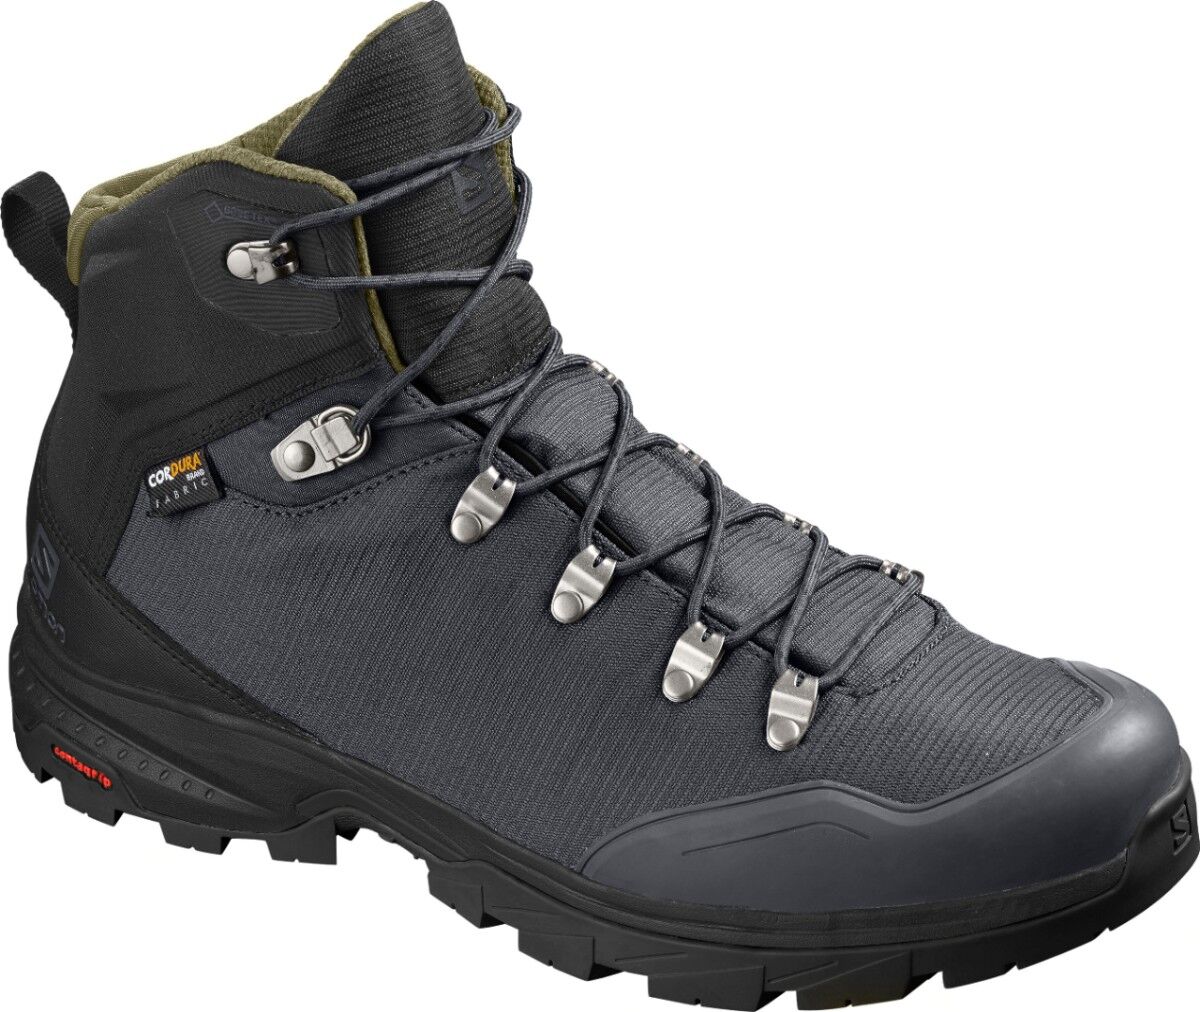 Salomon - Outback 500 GTX - Zapatillas de trekking - Hombre